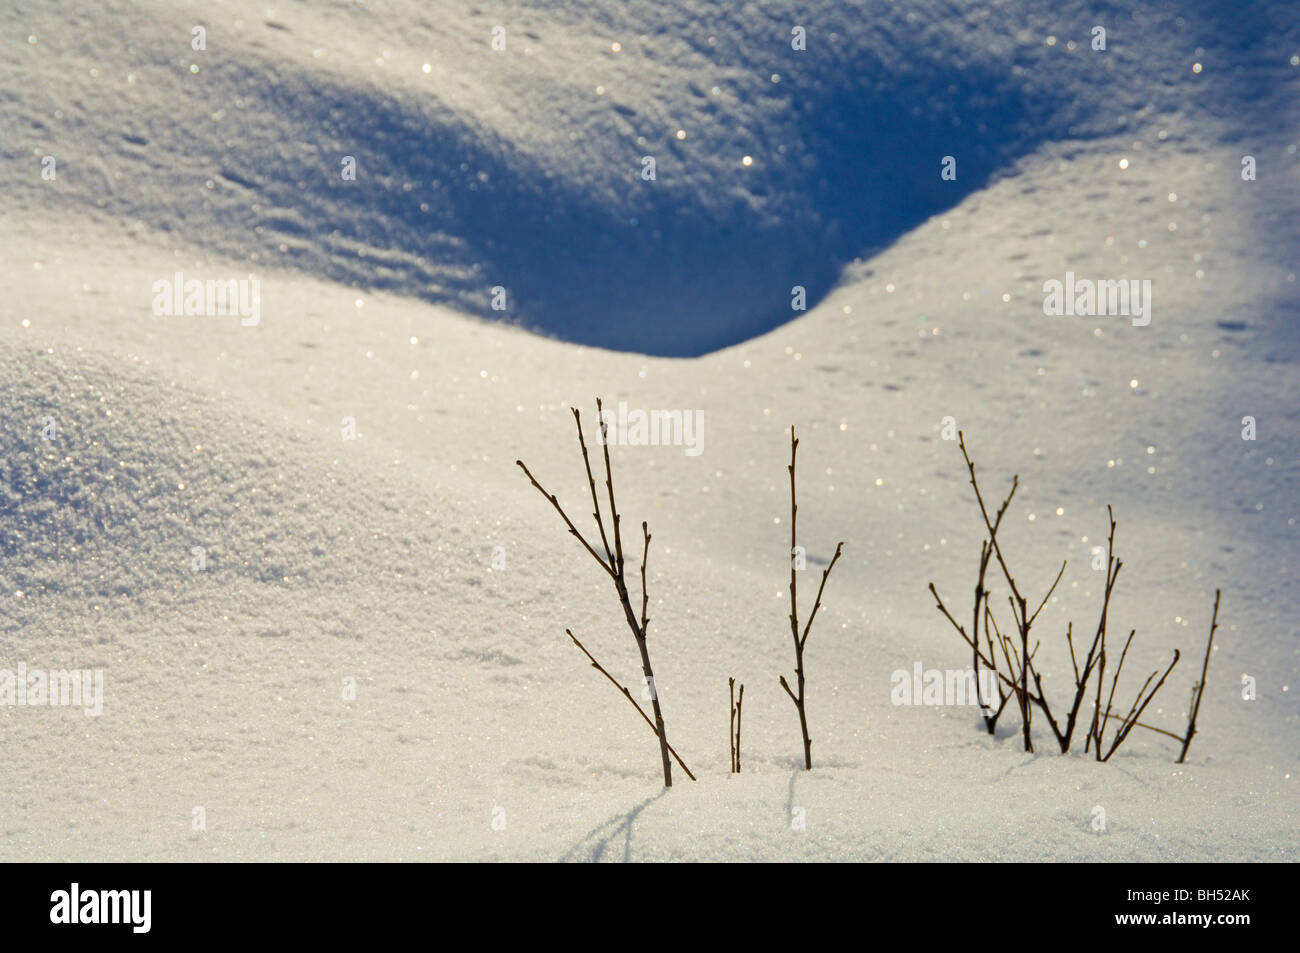 Snow drift with twigs poking through. Stock Photo